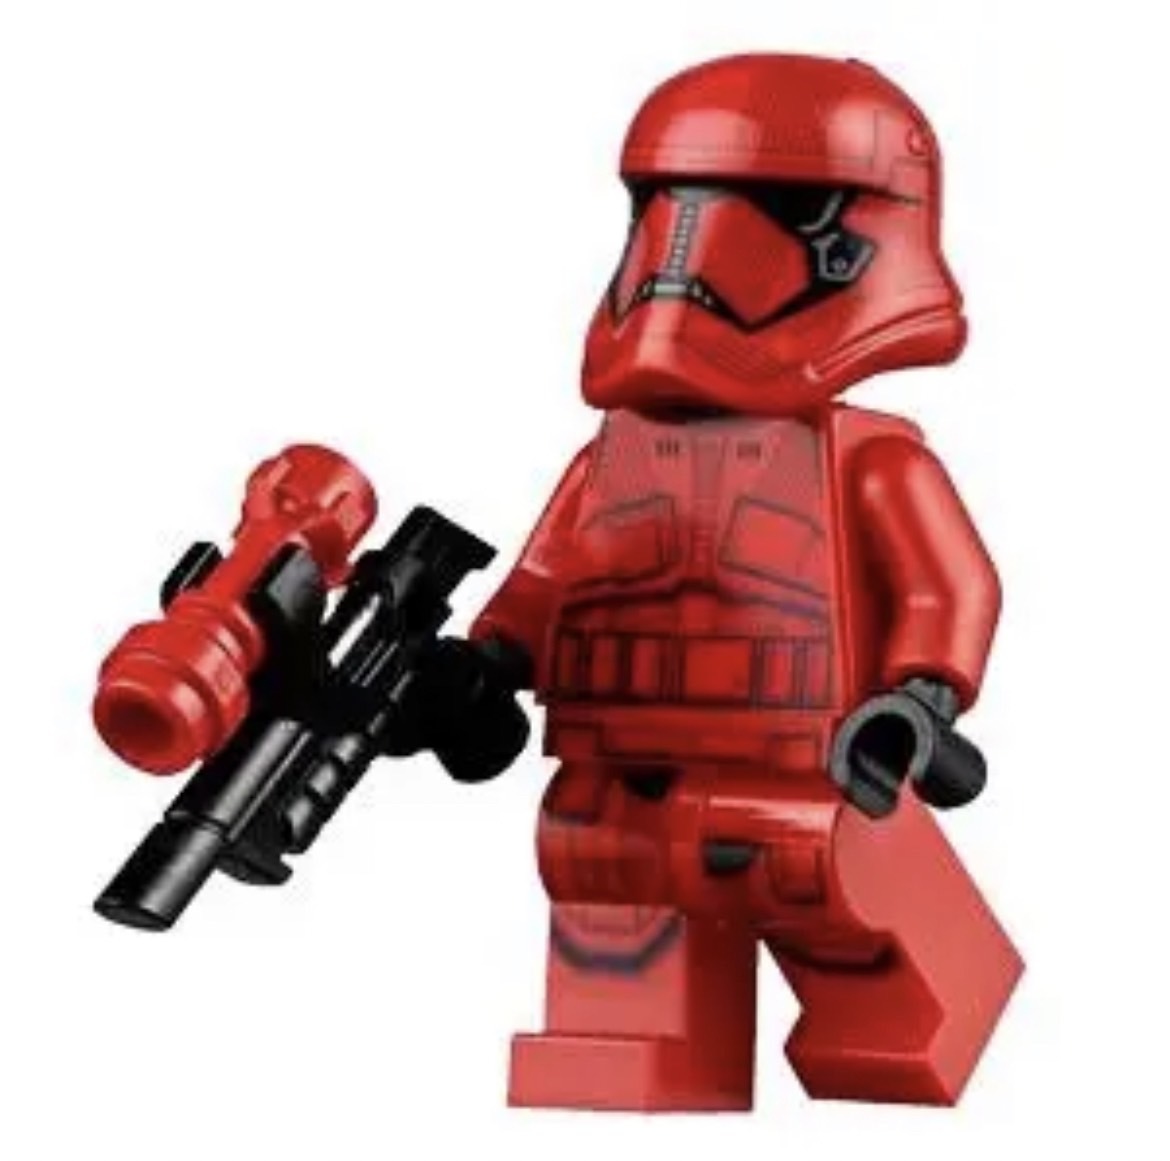 10体セット LEGO レゴ互換 ミニフィグ スターウォーズ シス・トルーパー フィギュア ミニフィグ 匿名配送 送料無料 Sith trooper  まとめ